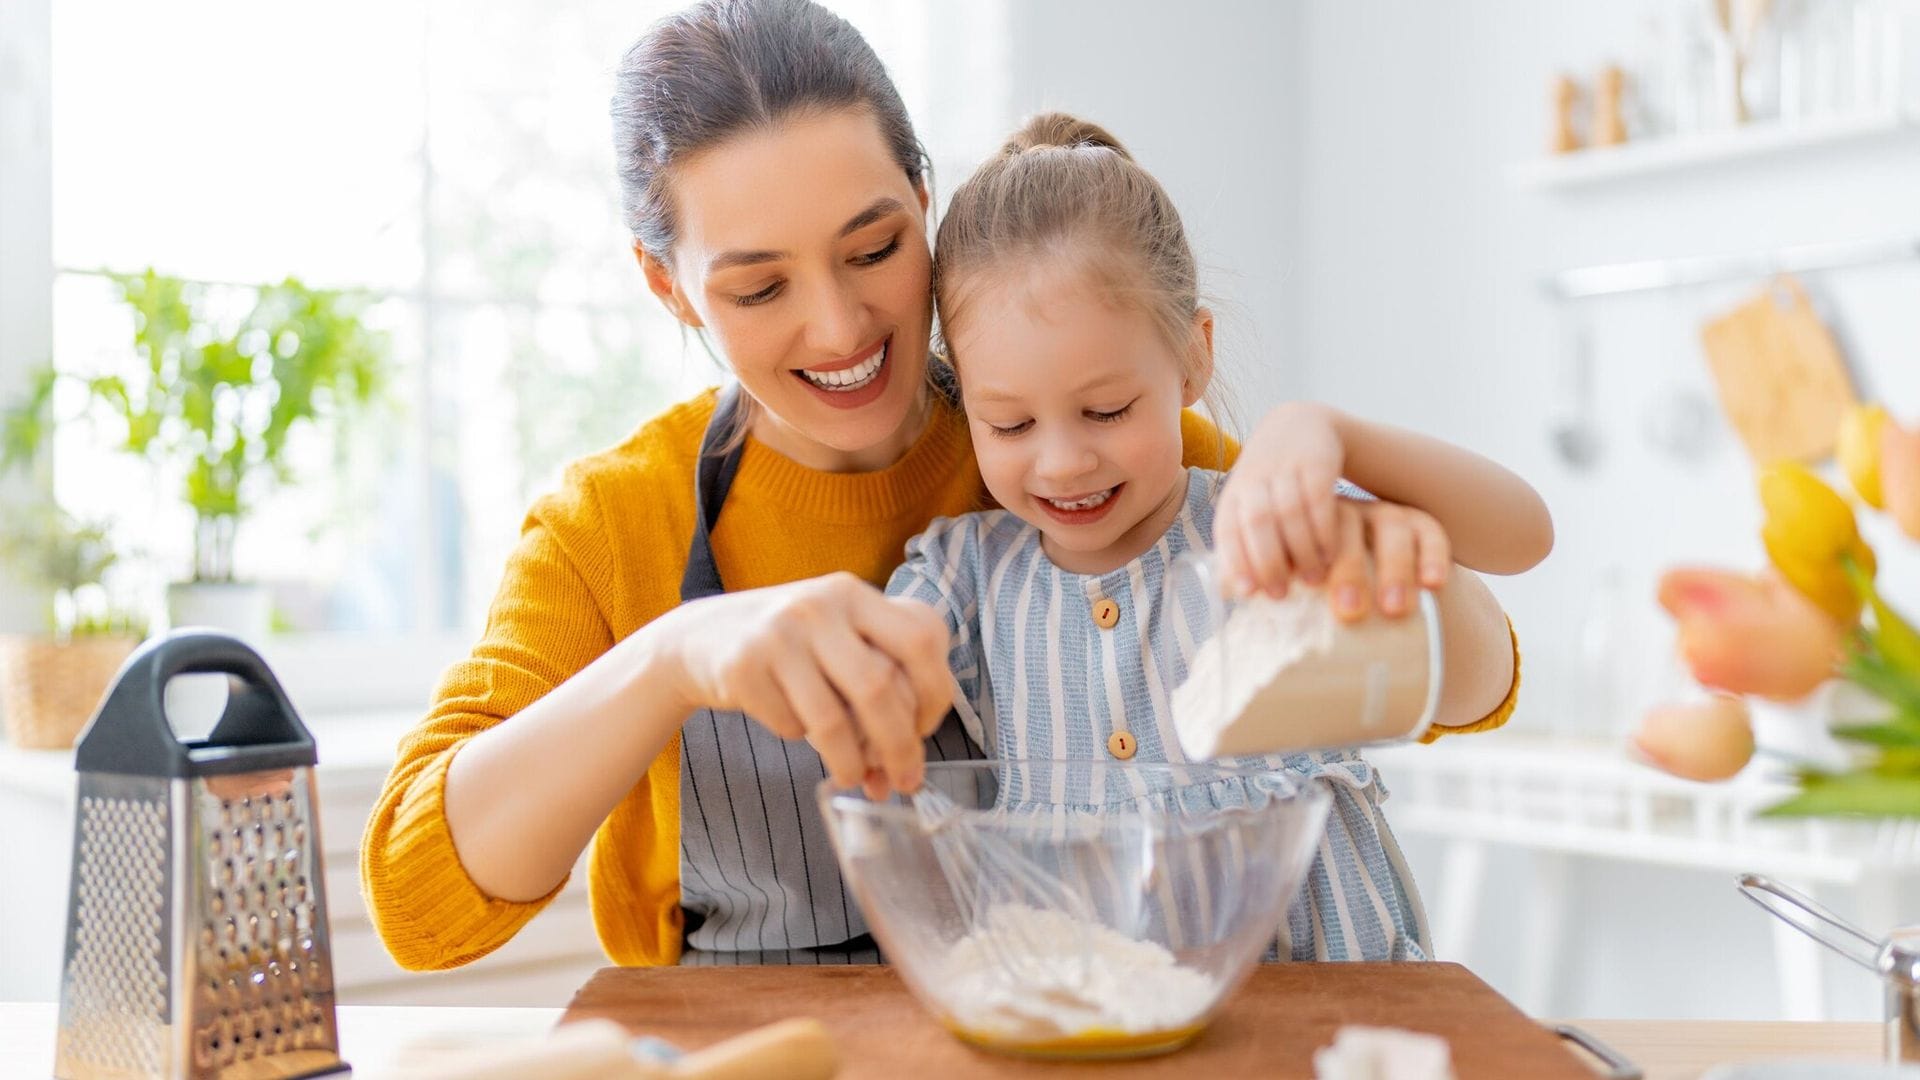 ¿Quieres que comer en familia sea un momento feliz? Una experta te explica los trucos